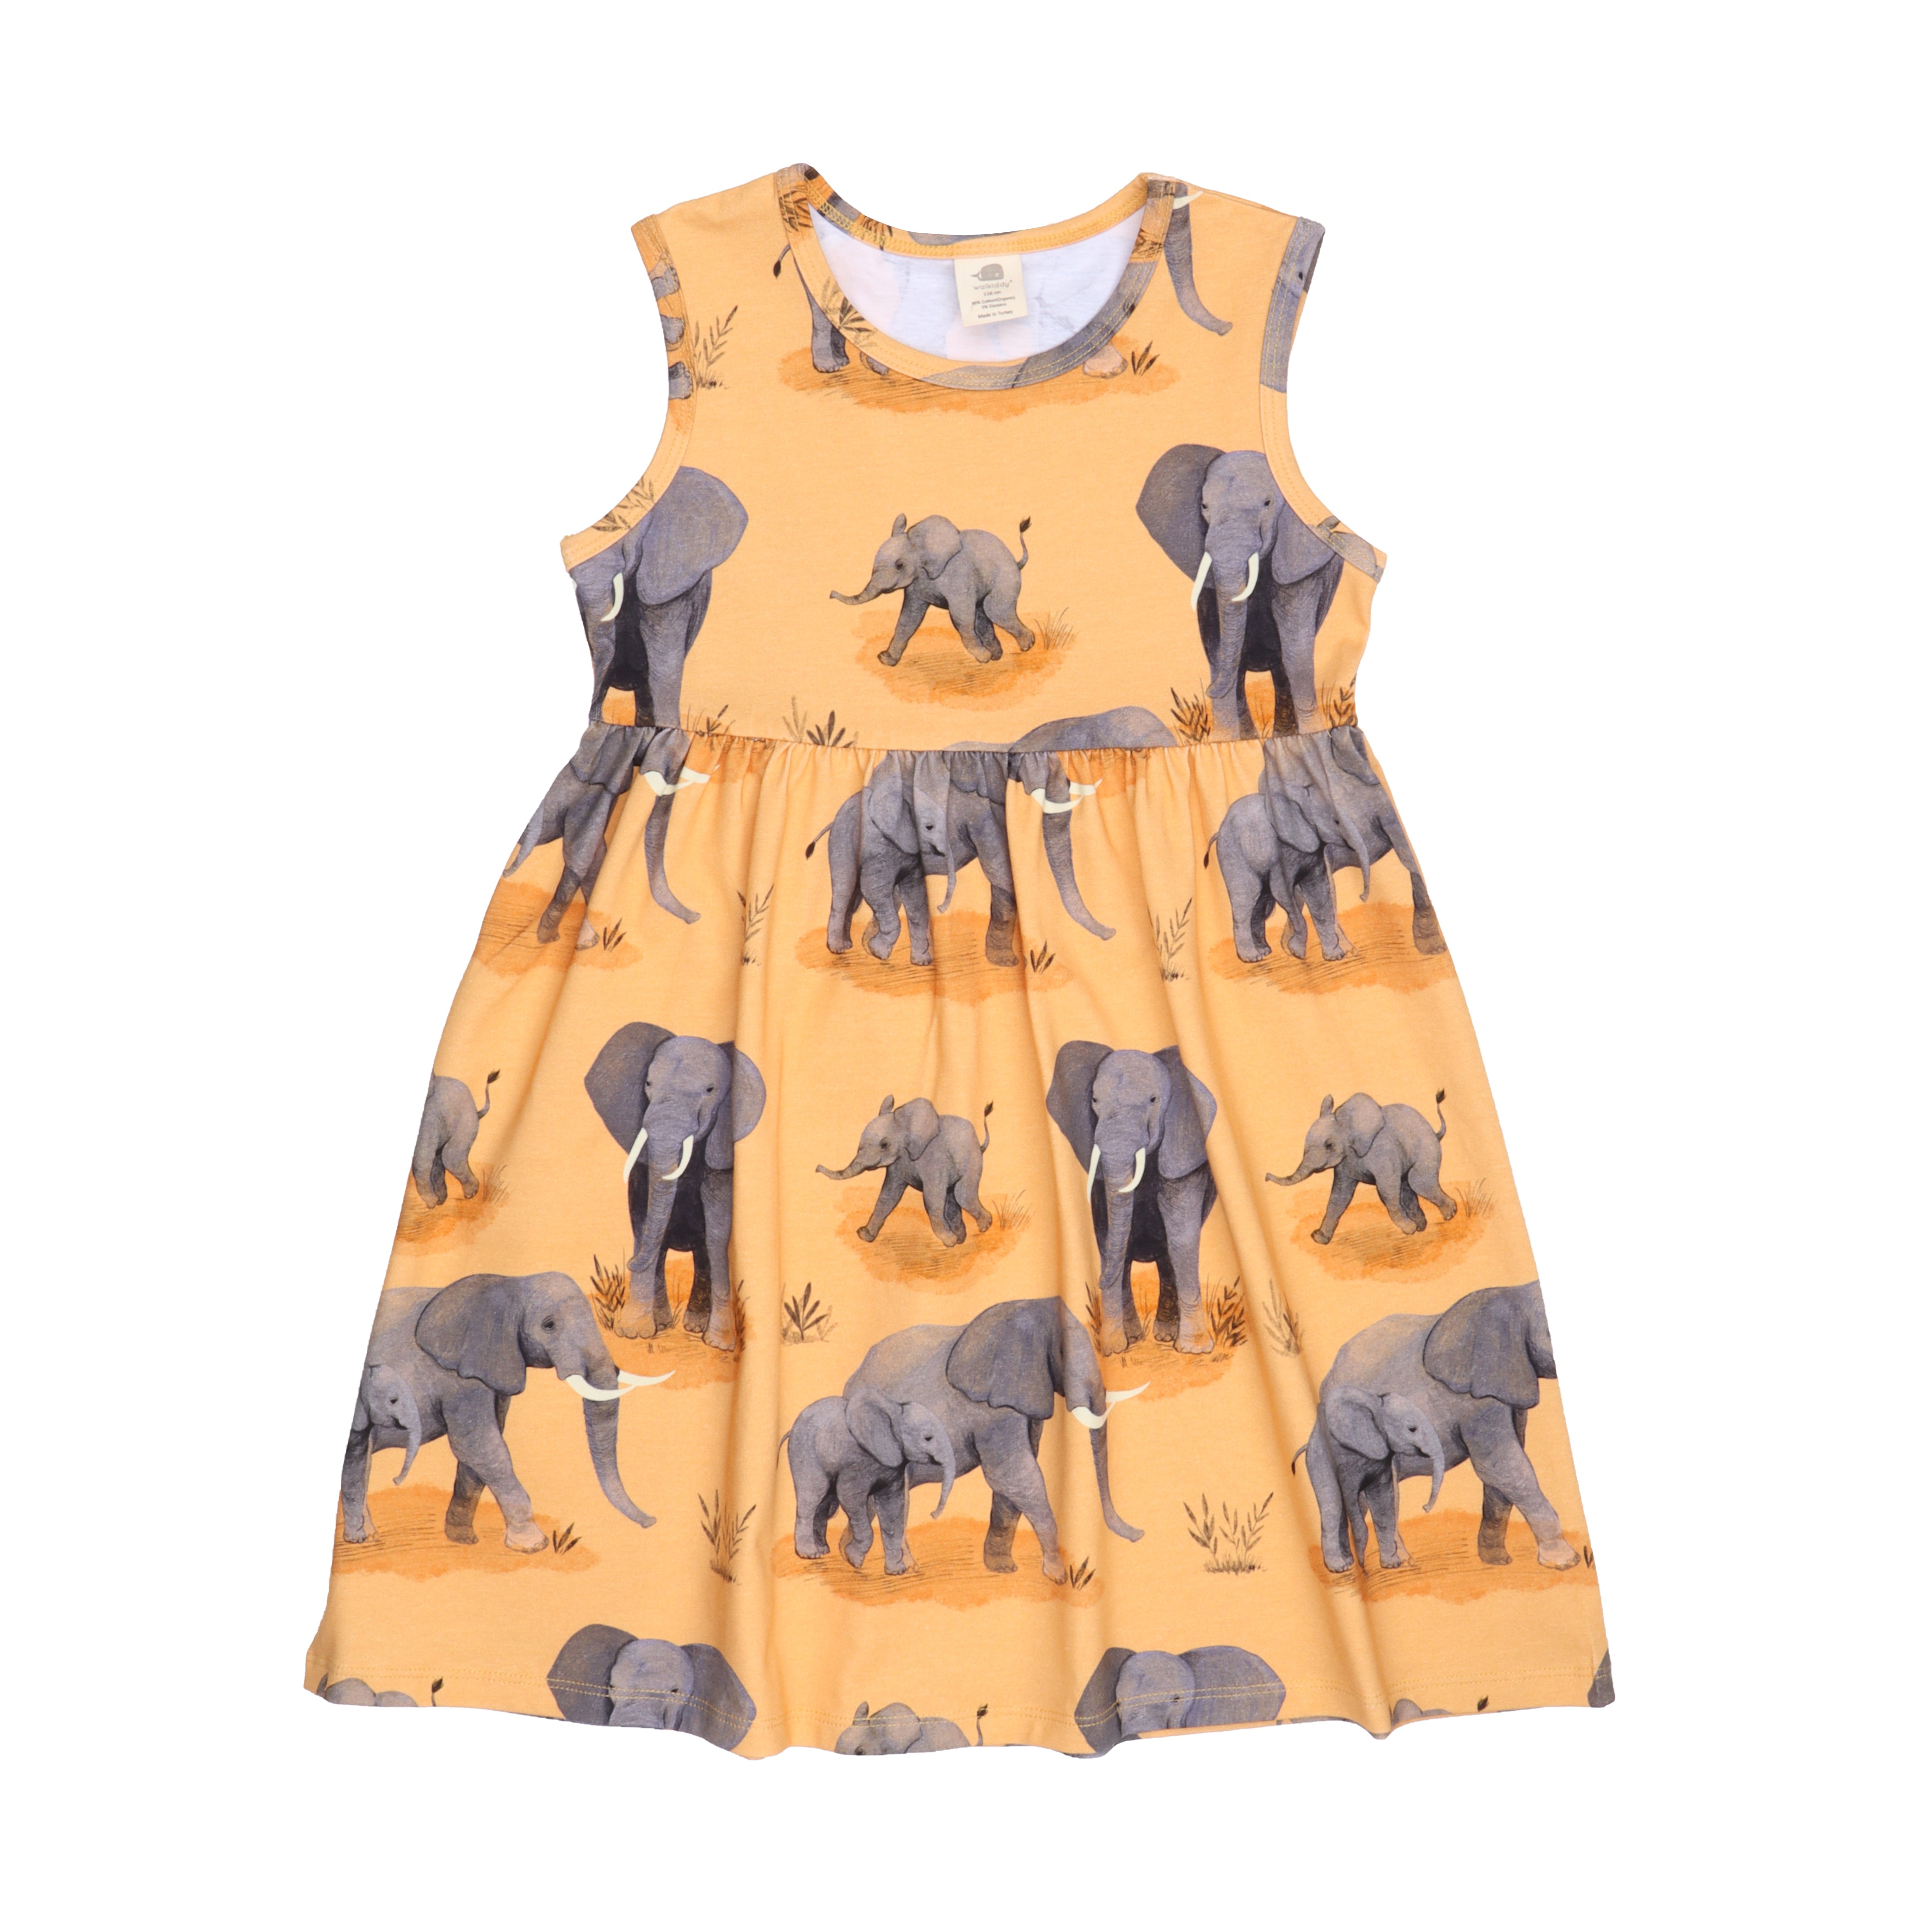 Walkiddy Dress Sleeveless Elephant Family